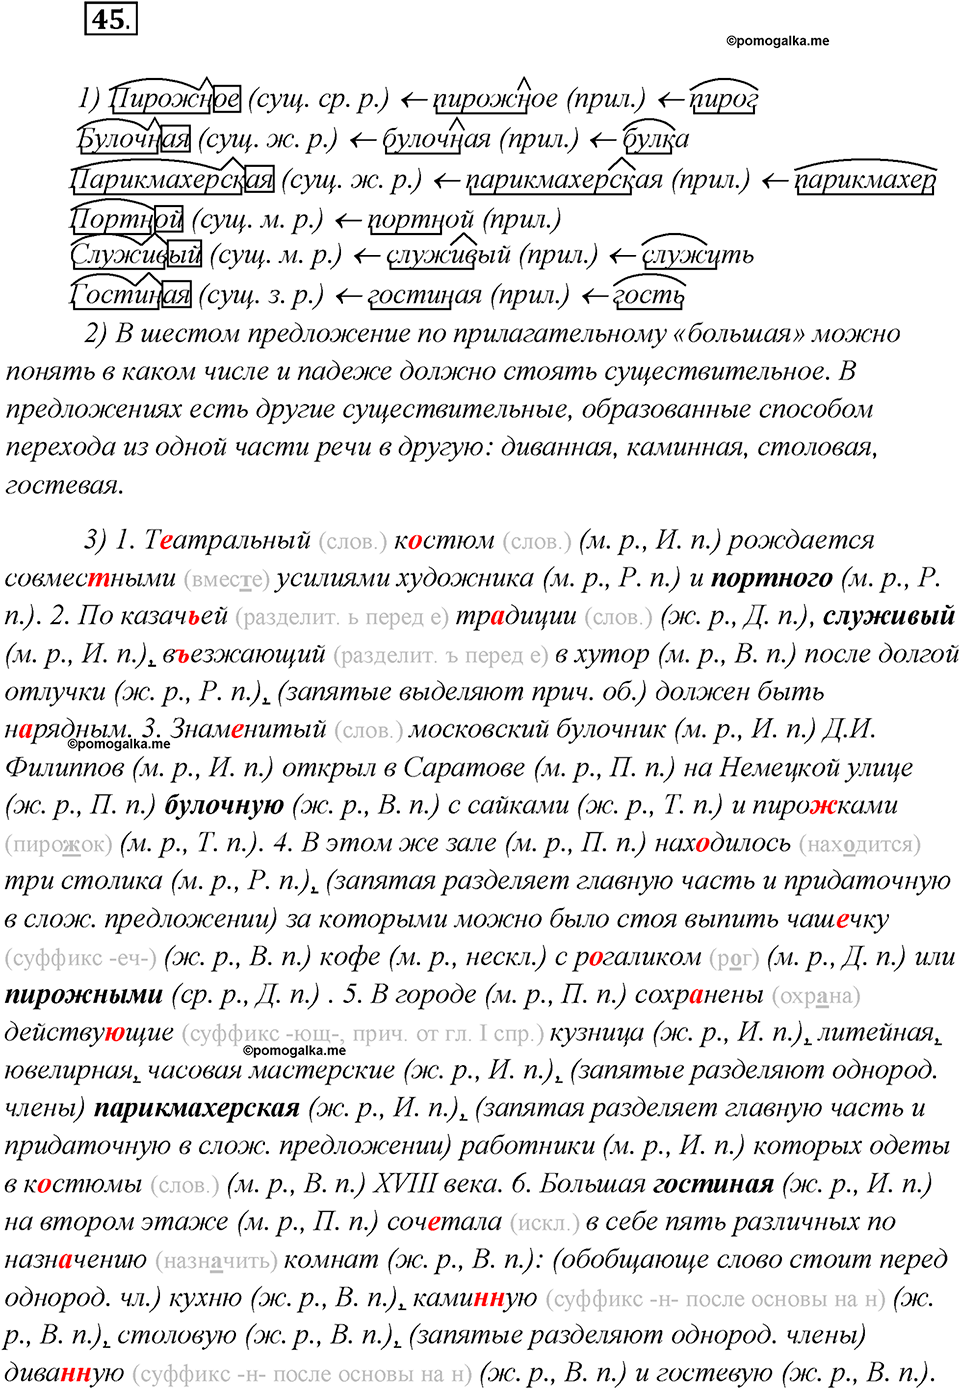 Глава 1. Упражнение №45 русский язык 7 класс Шмелев